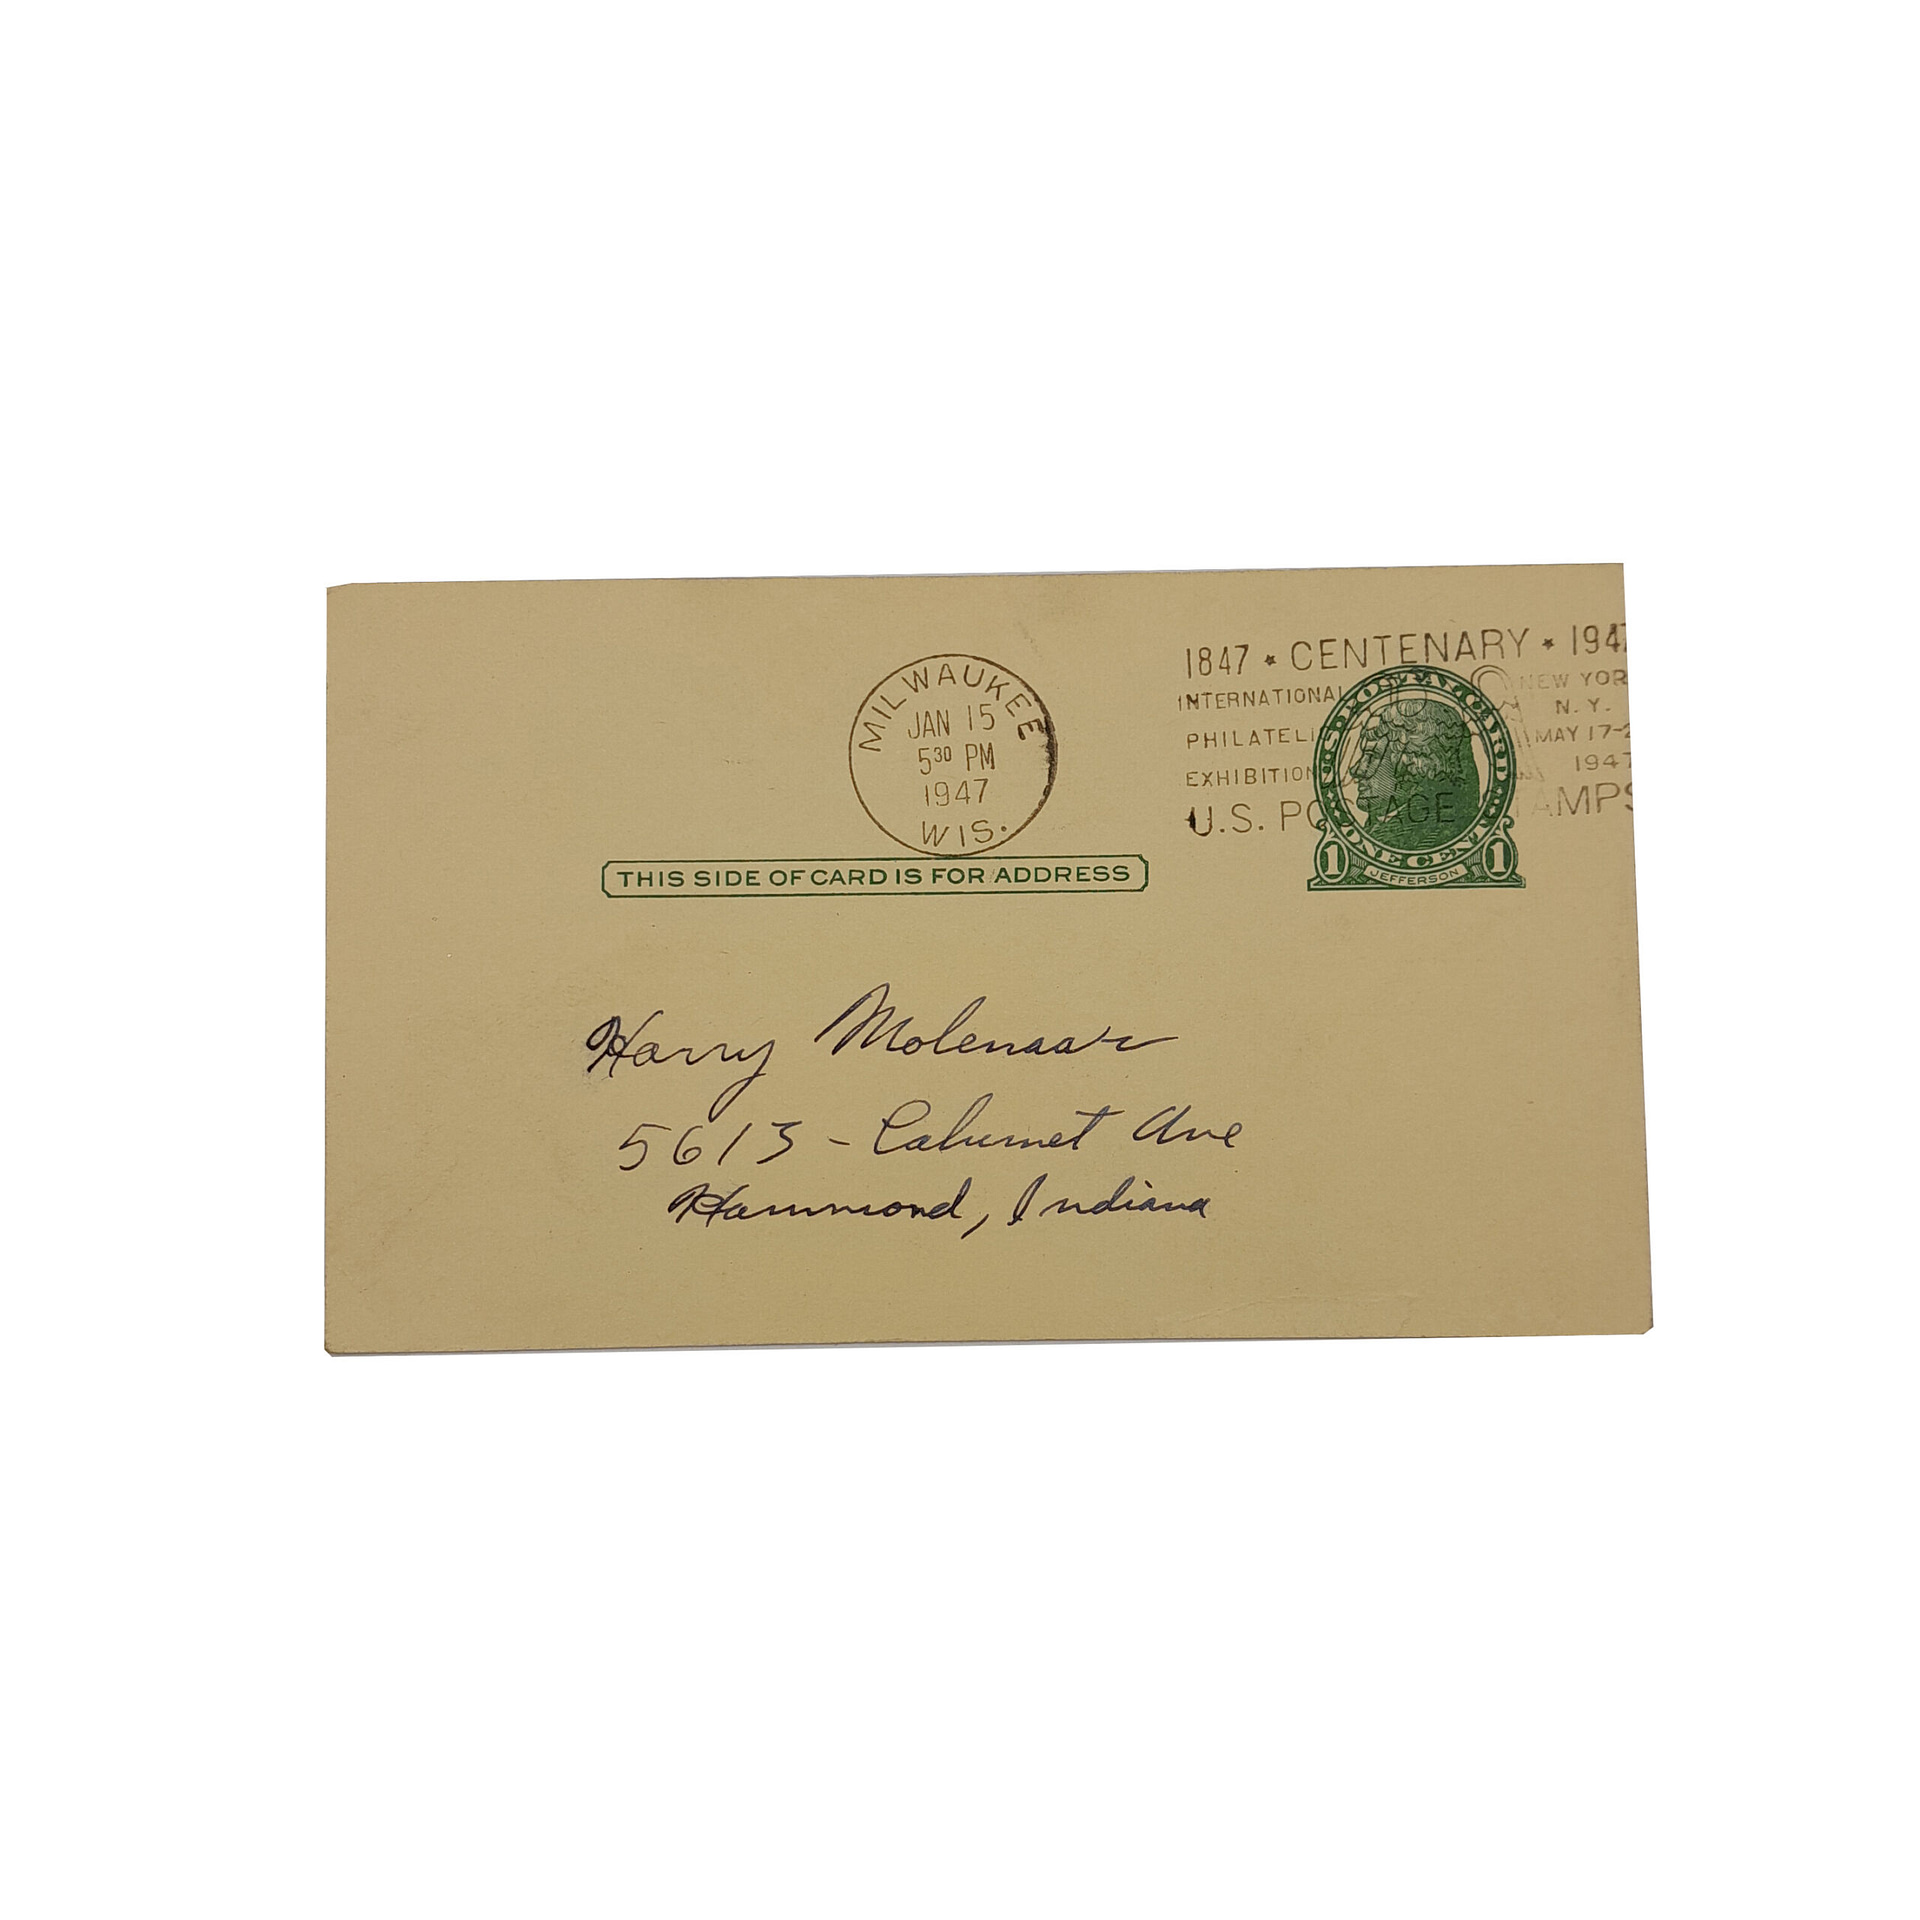 ORIG HARLEY 1947 FACTORY REPAIR CARD “FRAME BEYOUND REPAIR. – KNUCKLEHEAD